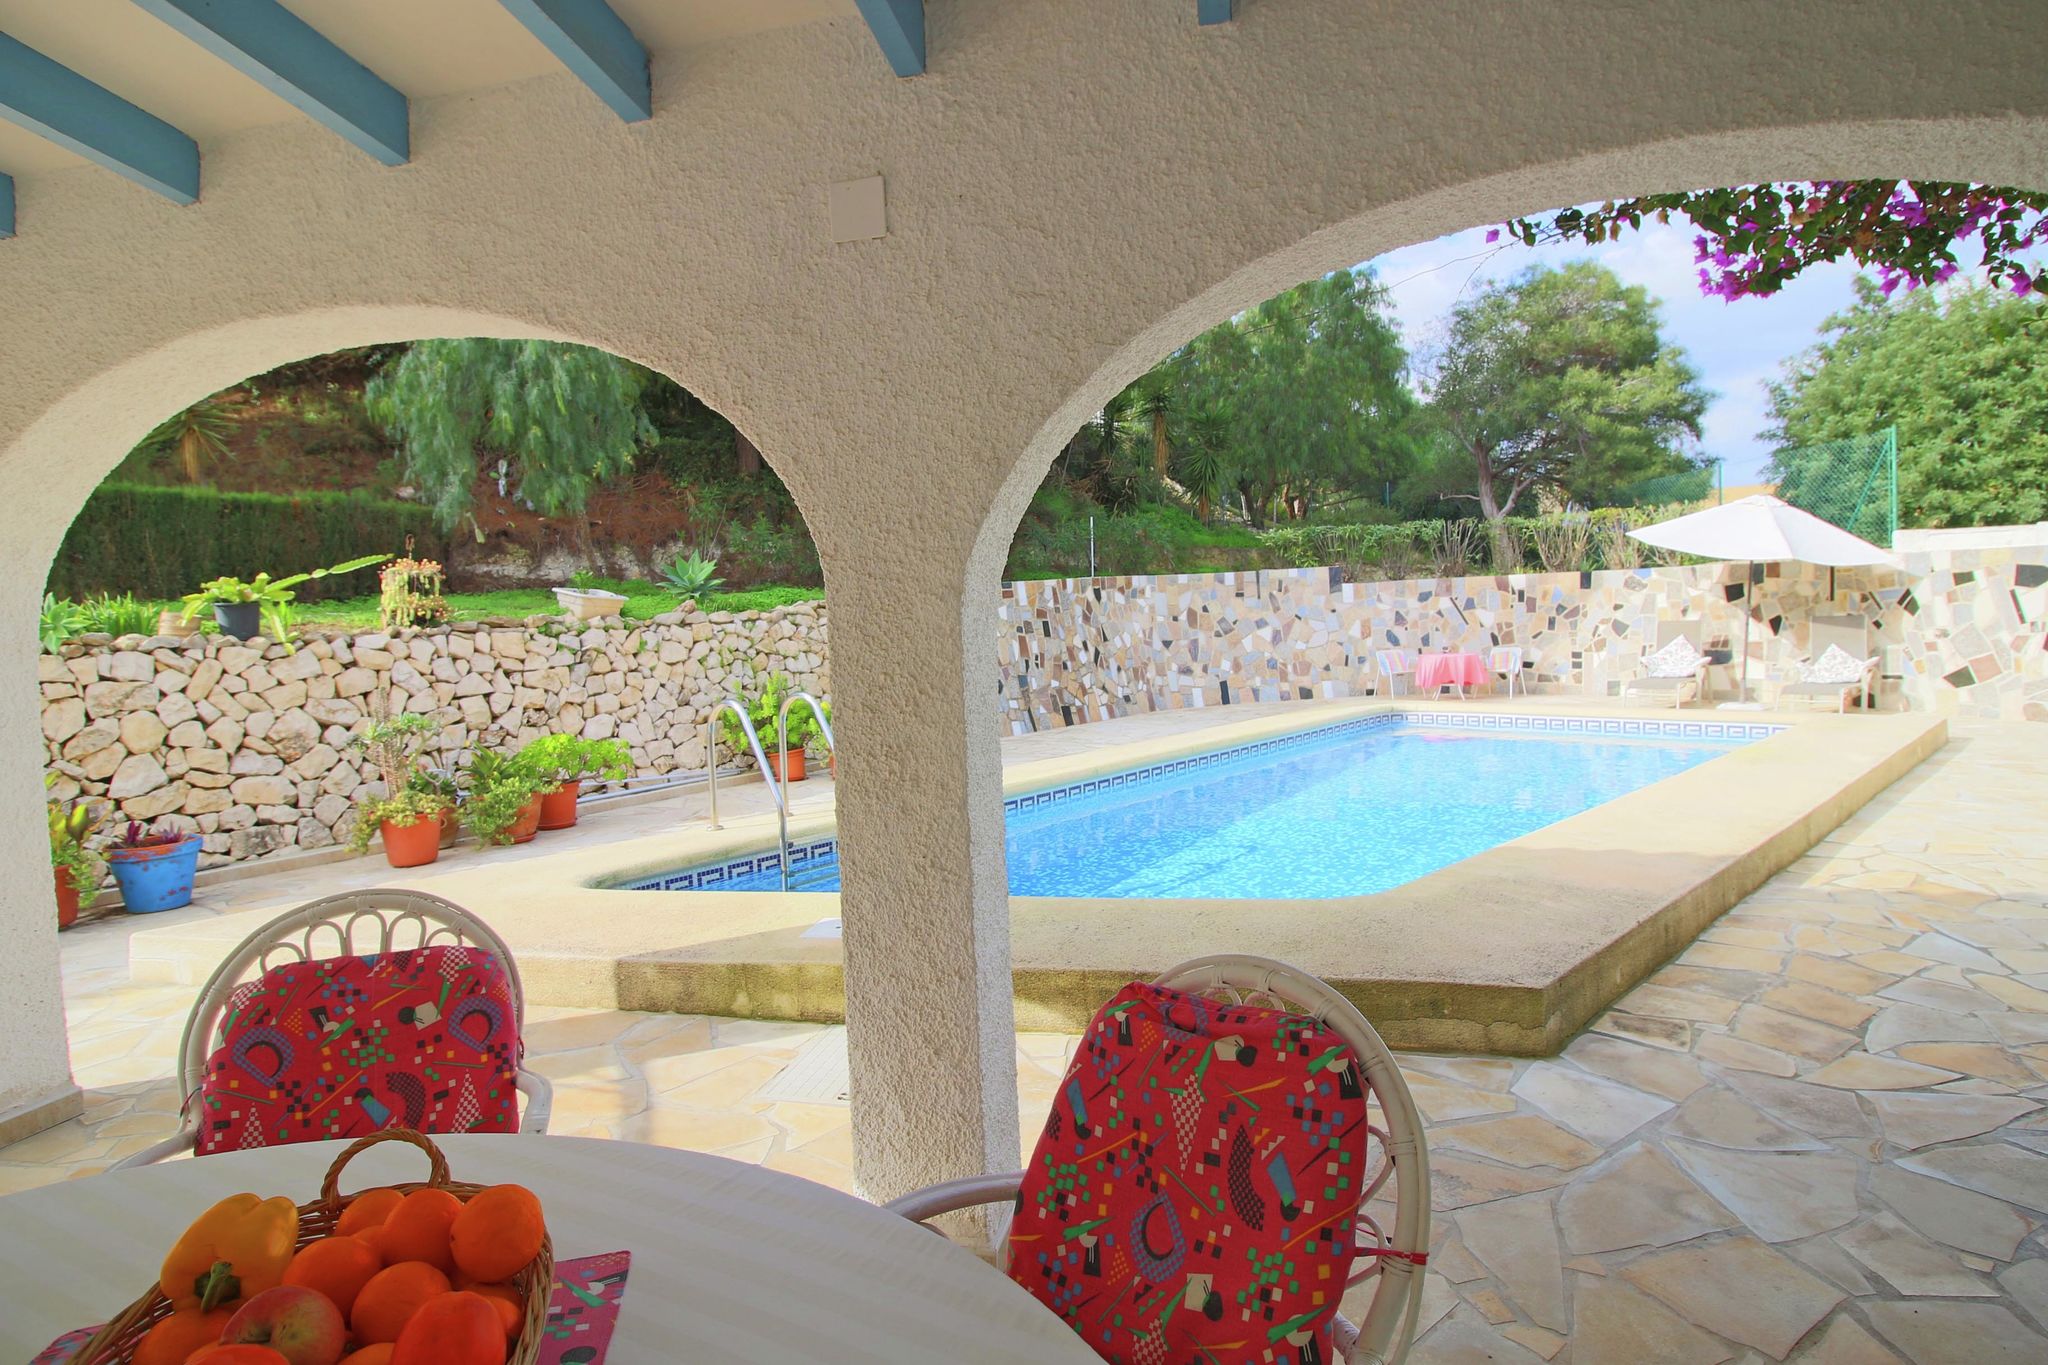 Vakantie villa op 3km van het strand met een privézwembad